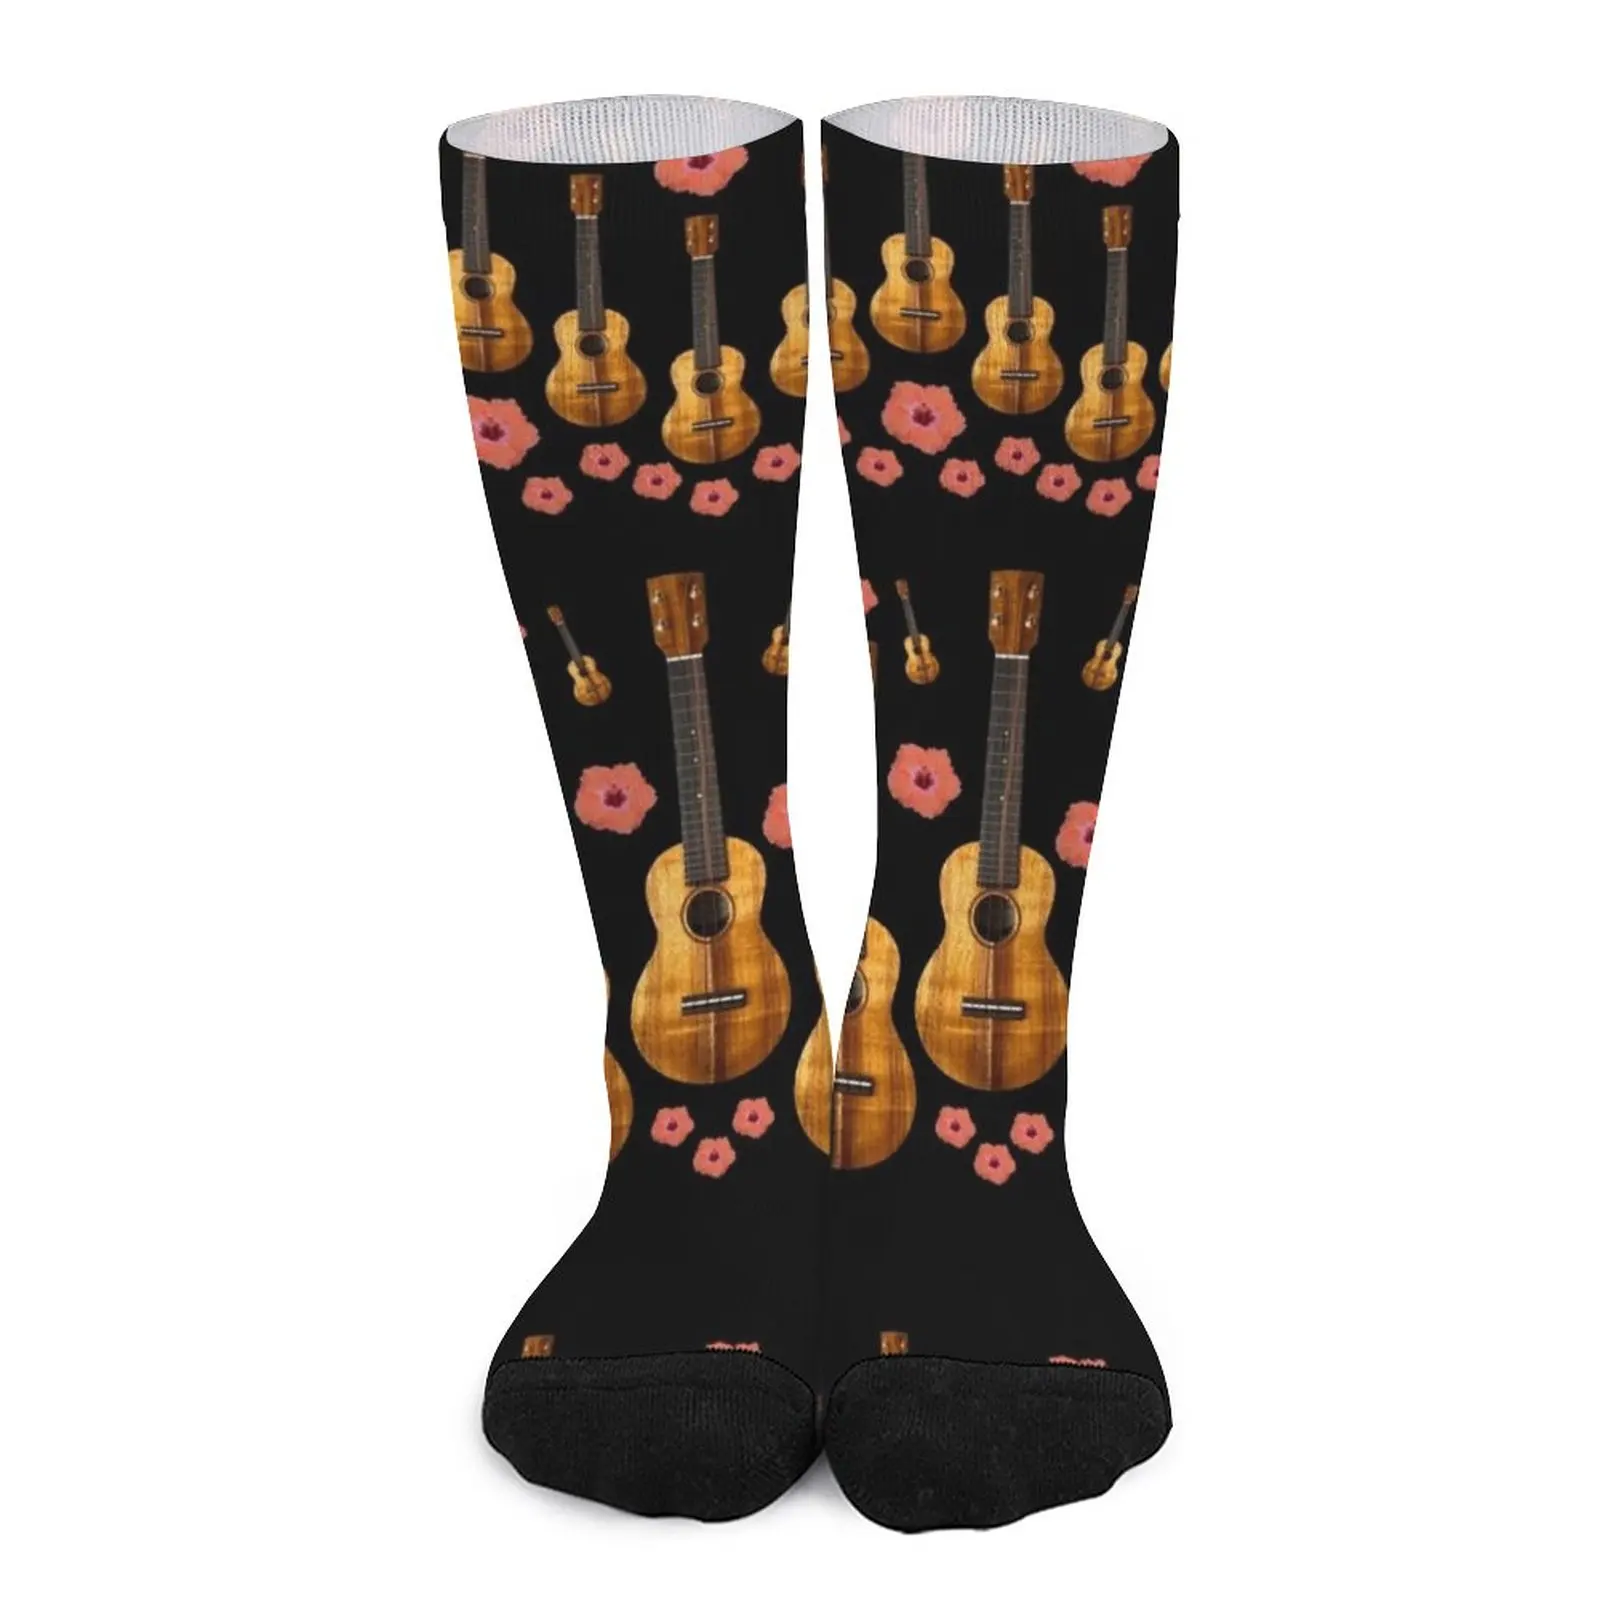 

Ukuleles: Uke Hibiscus on Black Socks sheer socks men non-slip soccer stockings heated socks